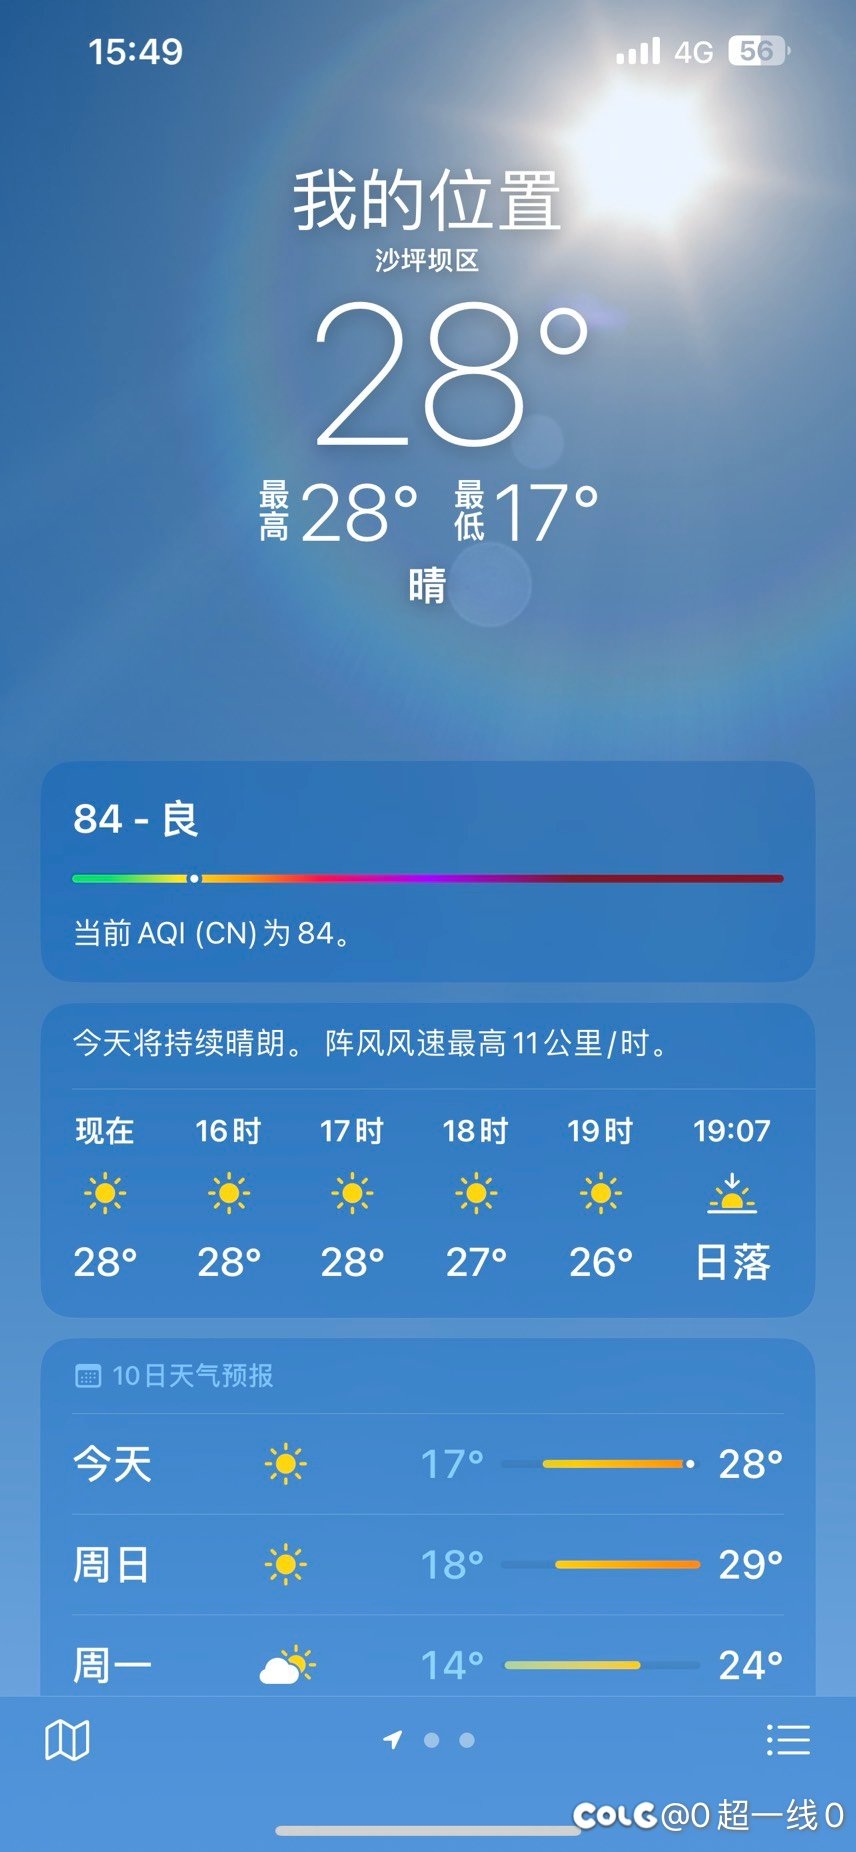 重庆已经过上夏天的生活了，吹电风扇了1